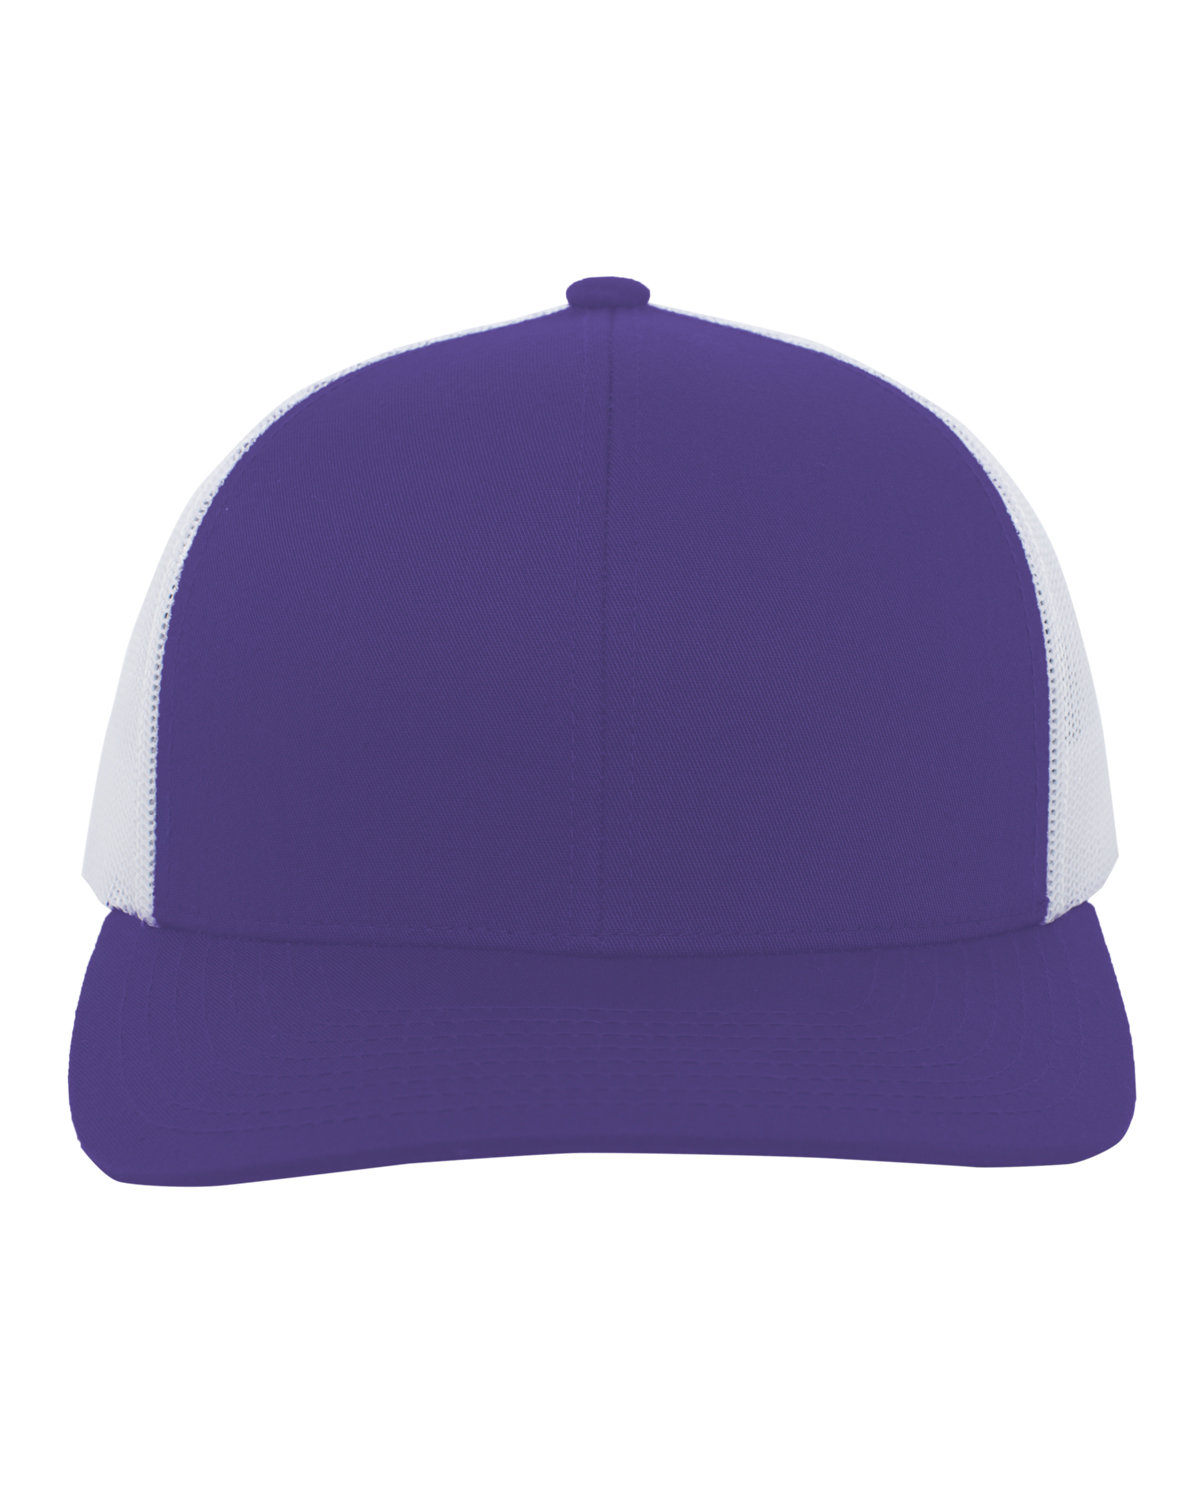 Pacific Headwear Trucker Snapback Hat PURPLE/ WHITE 